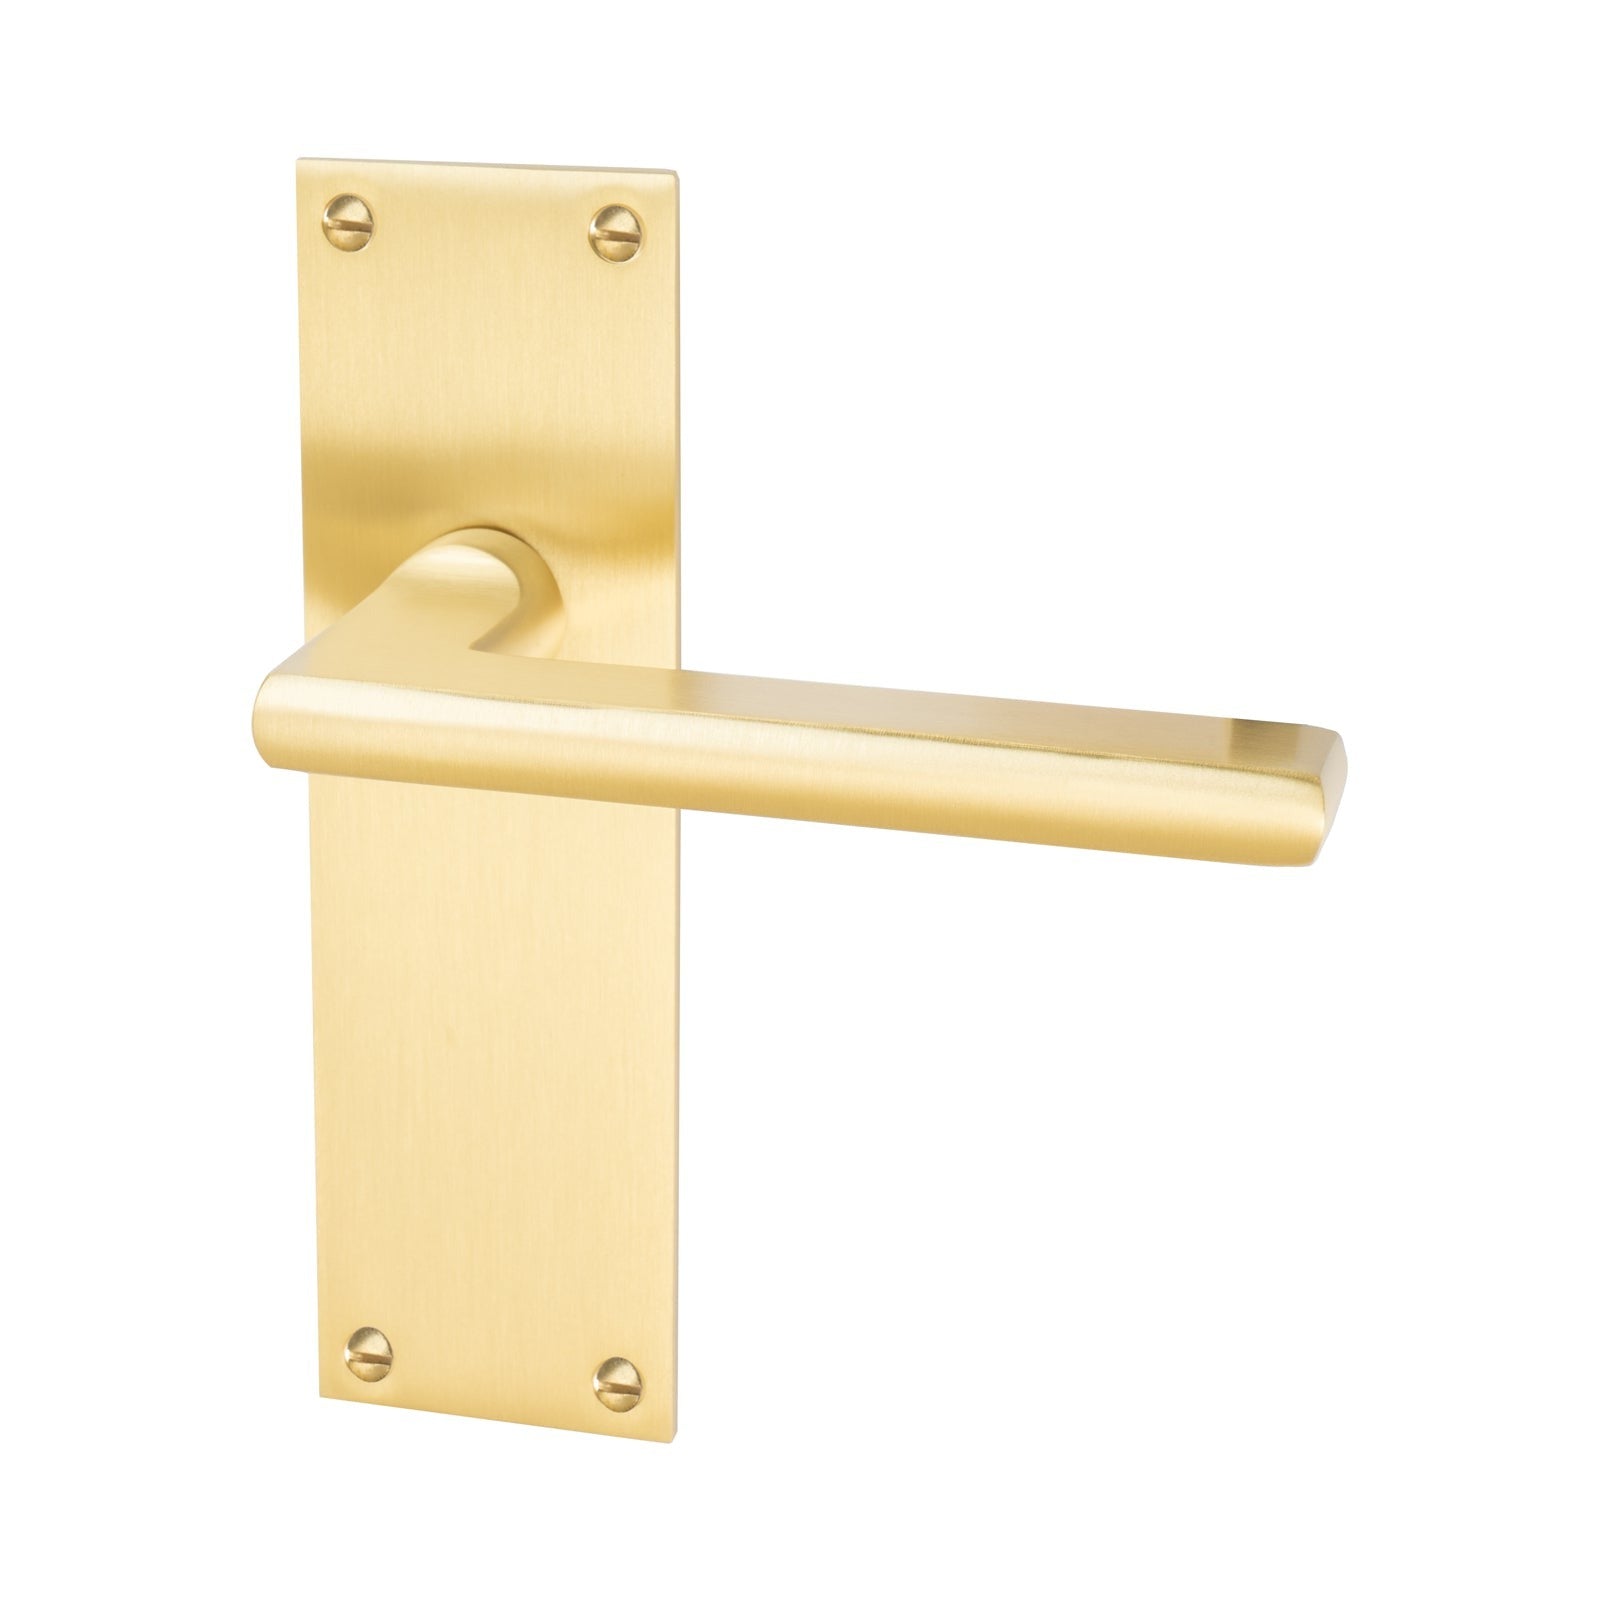 Trident Door Handles On Plate Latch Handle in Satin Brass SHOW